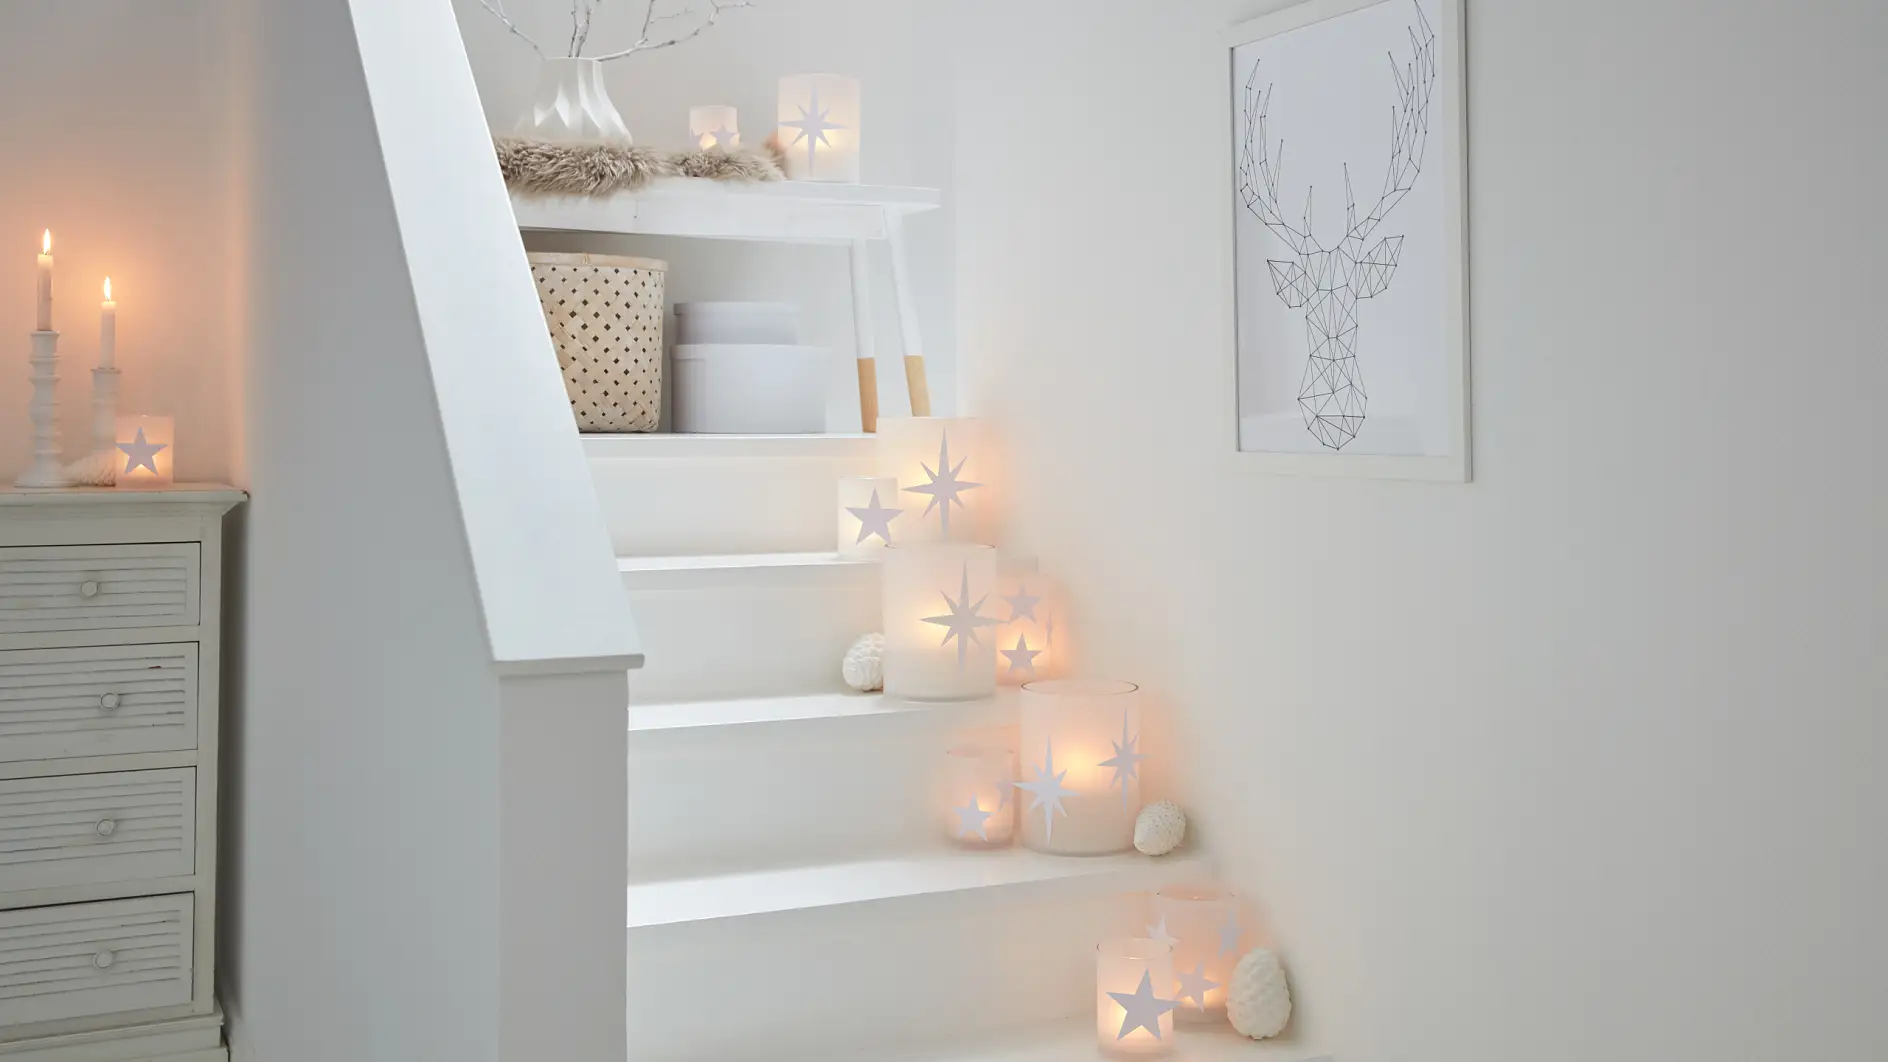 用蜡烛来装饰楼梯（以安全方式！），十分醒目，也非常漂亮。 特别是用纸星星装饰手工烛台时更是如此。